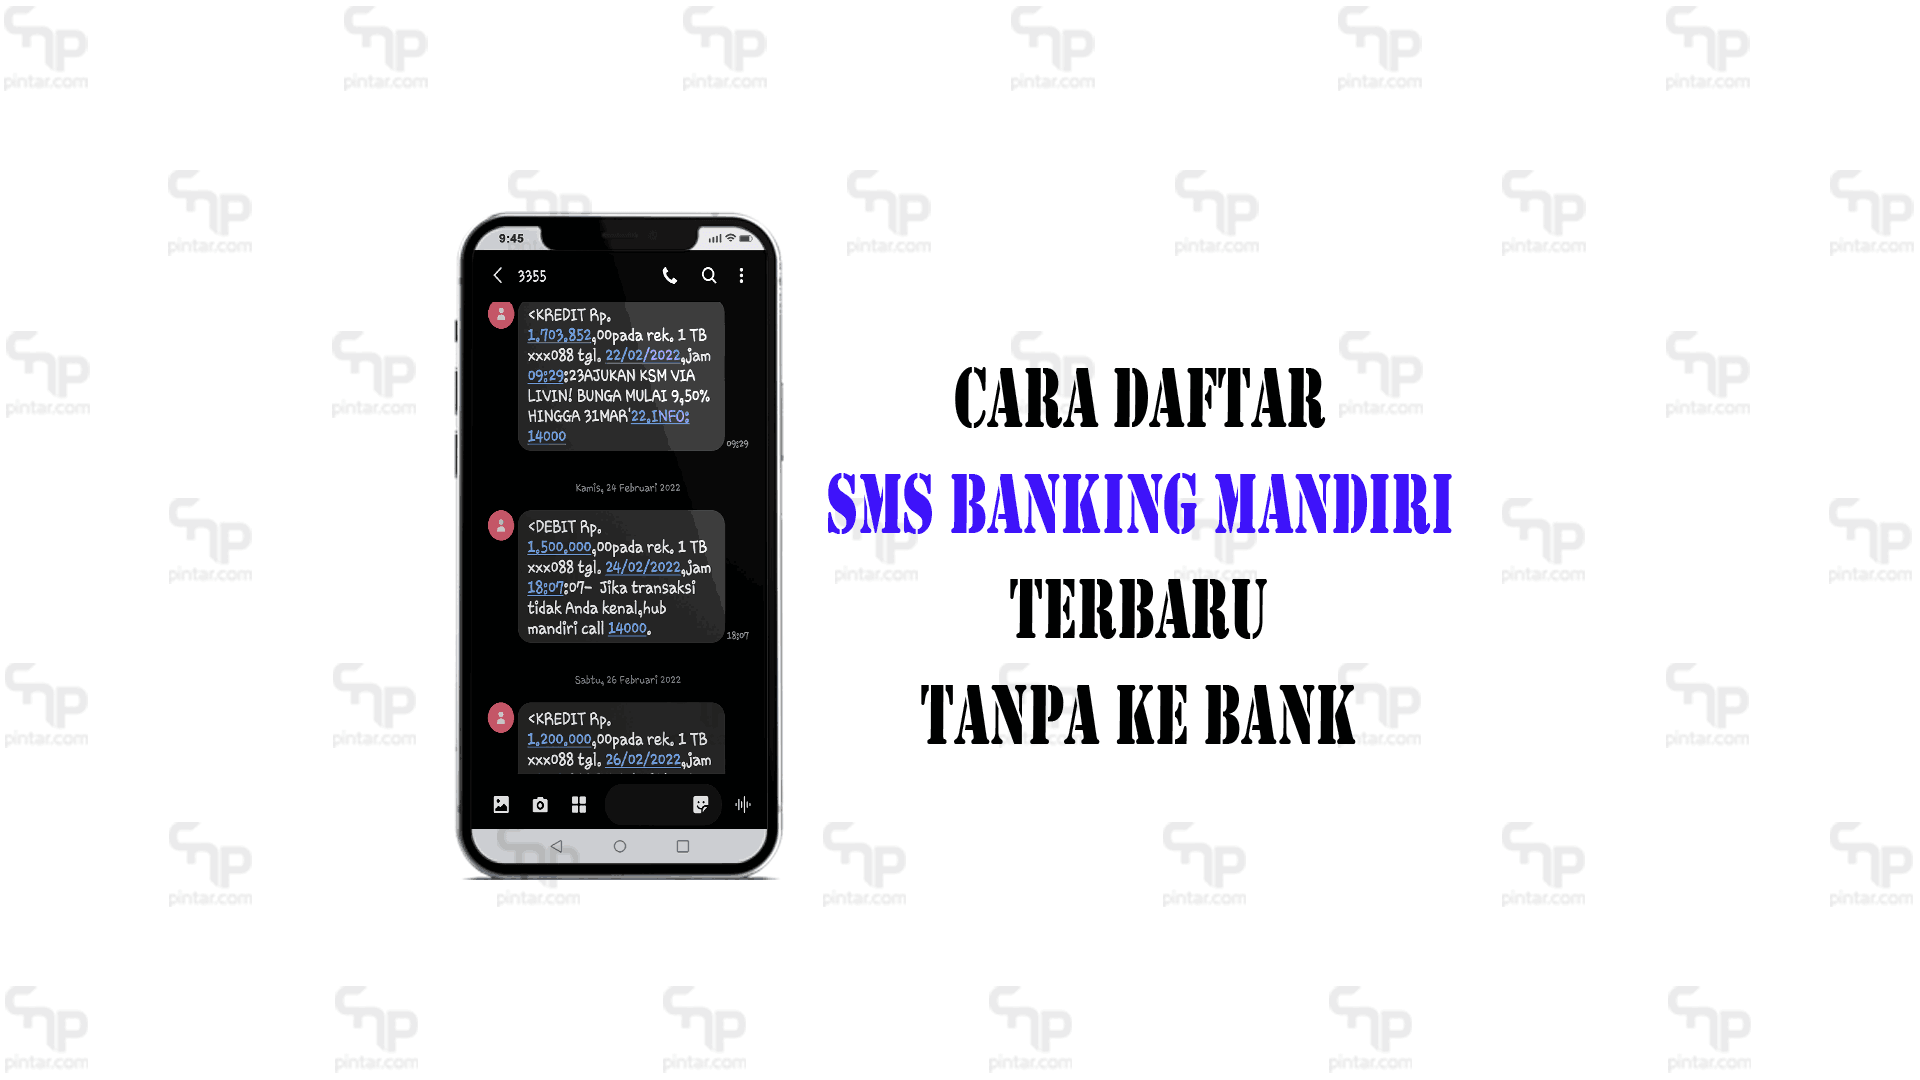 Cara-daftar-sms-banking-mandiri